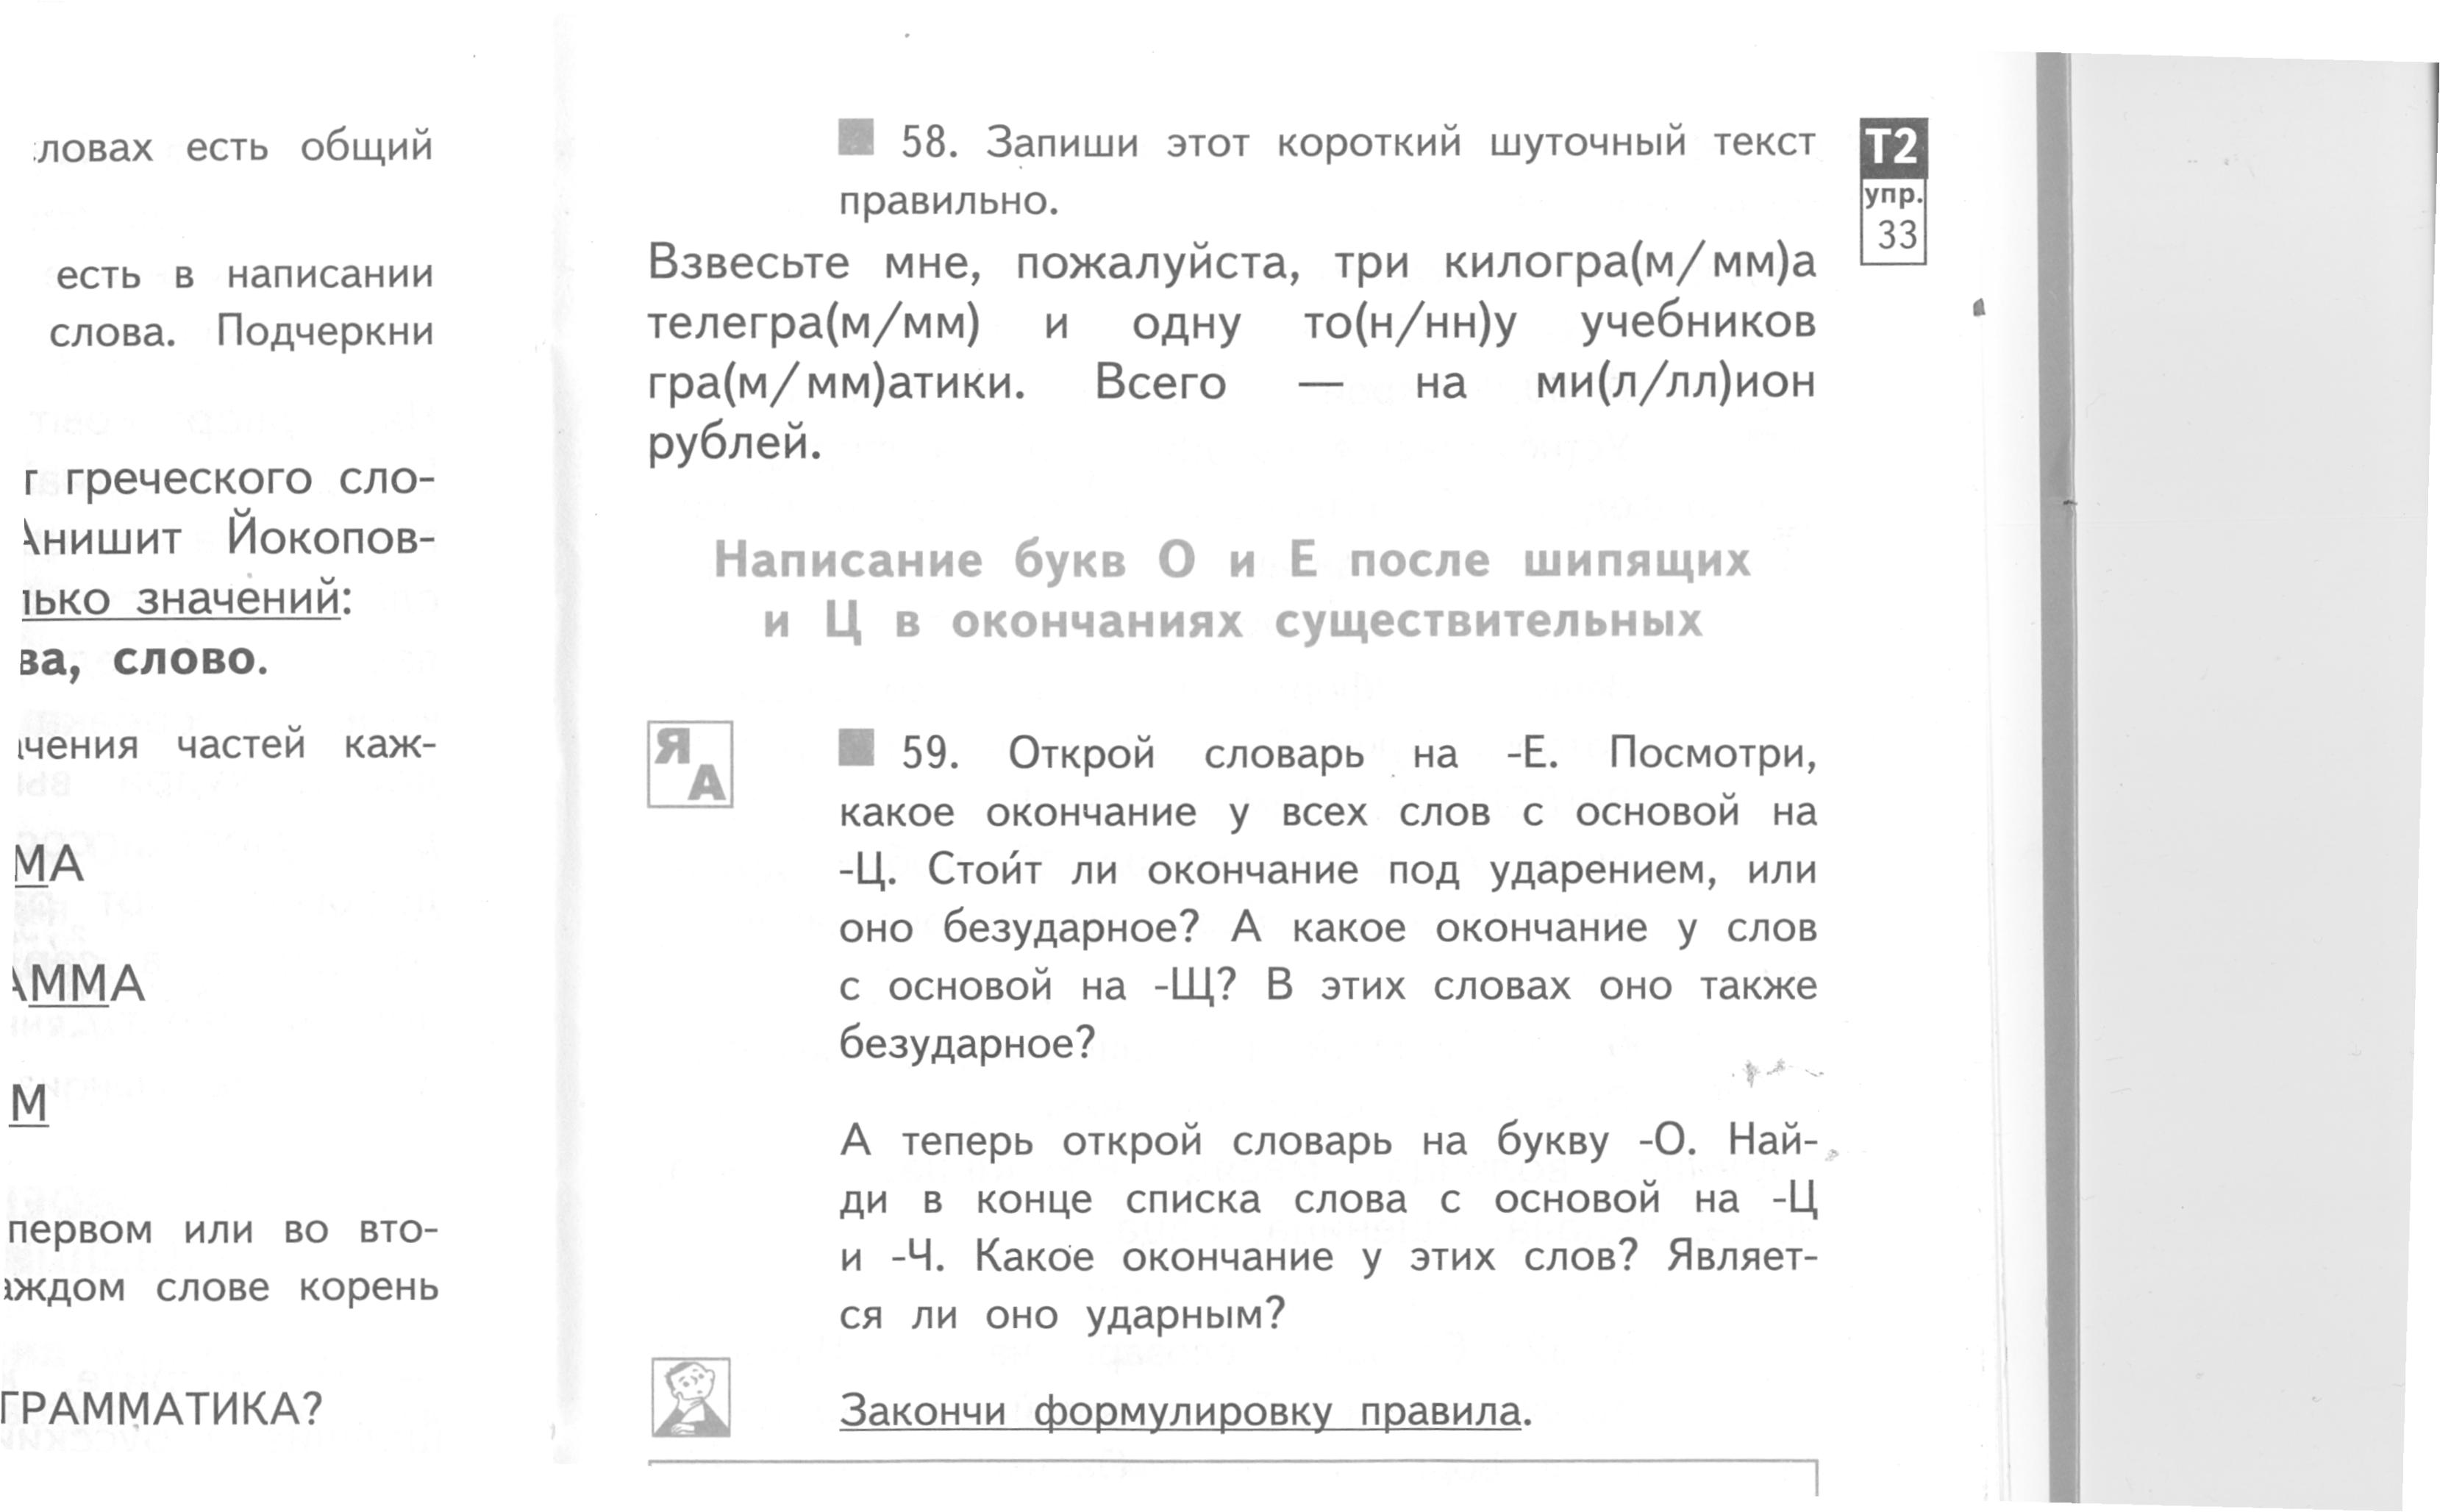 План-конспект урока по русскому языку (3 класс) на тему: Урок по теме «Написание букв О и Е после шипящих и ц в окончаниях существительных»